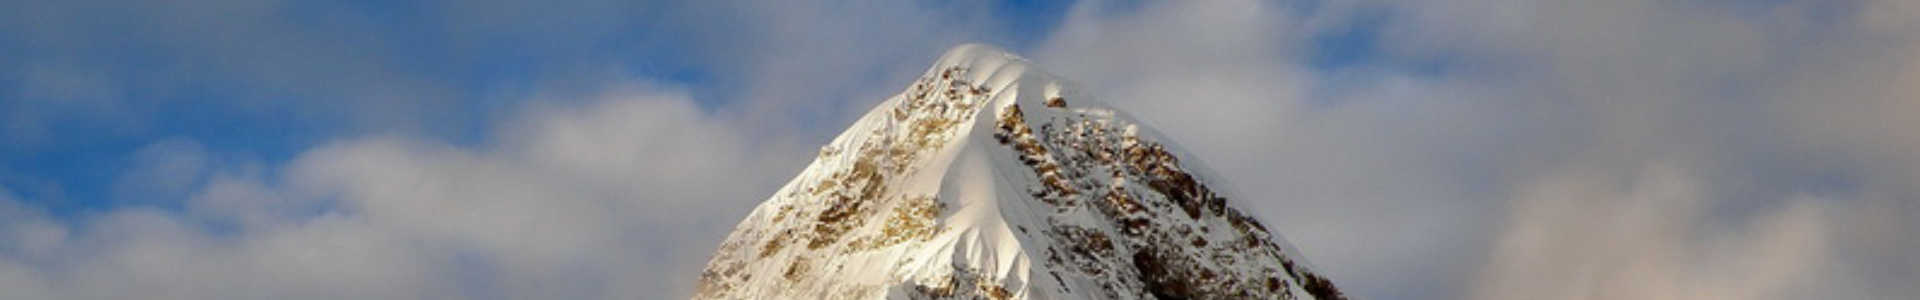 zdjęcie przedstawiające wysoki szczyt górski